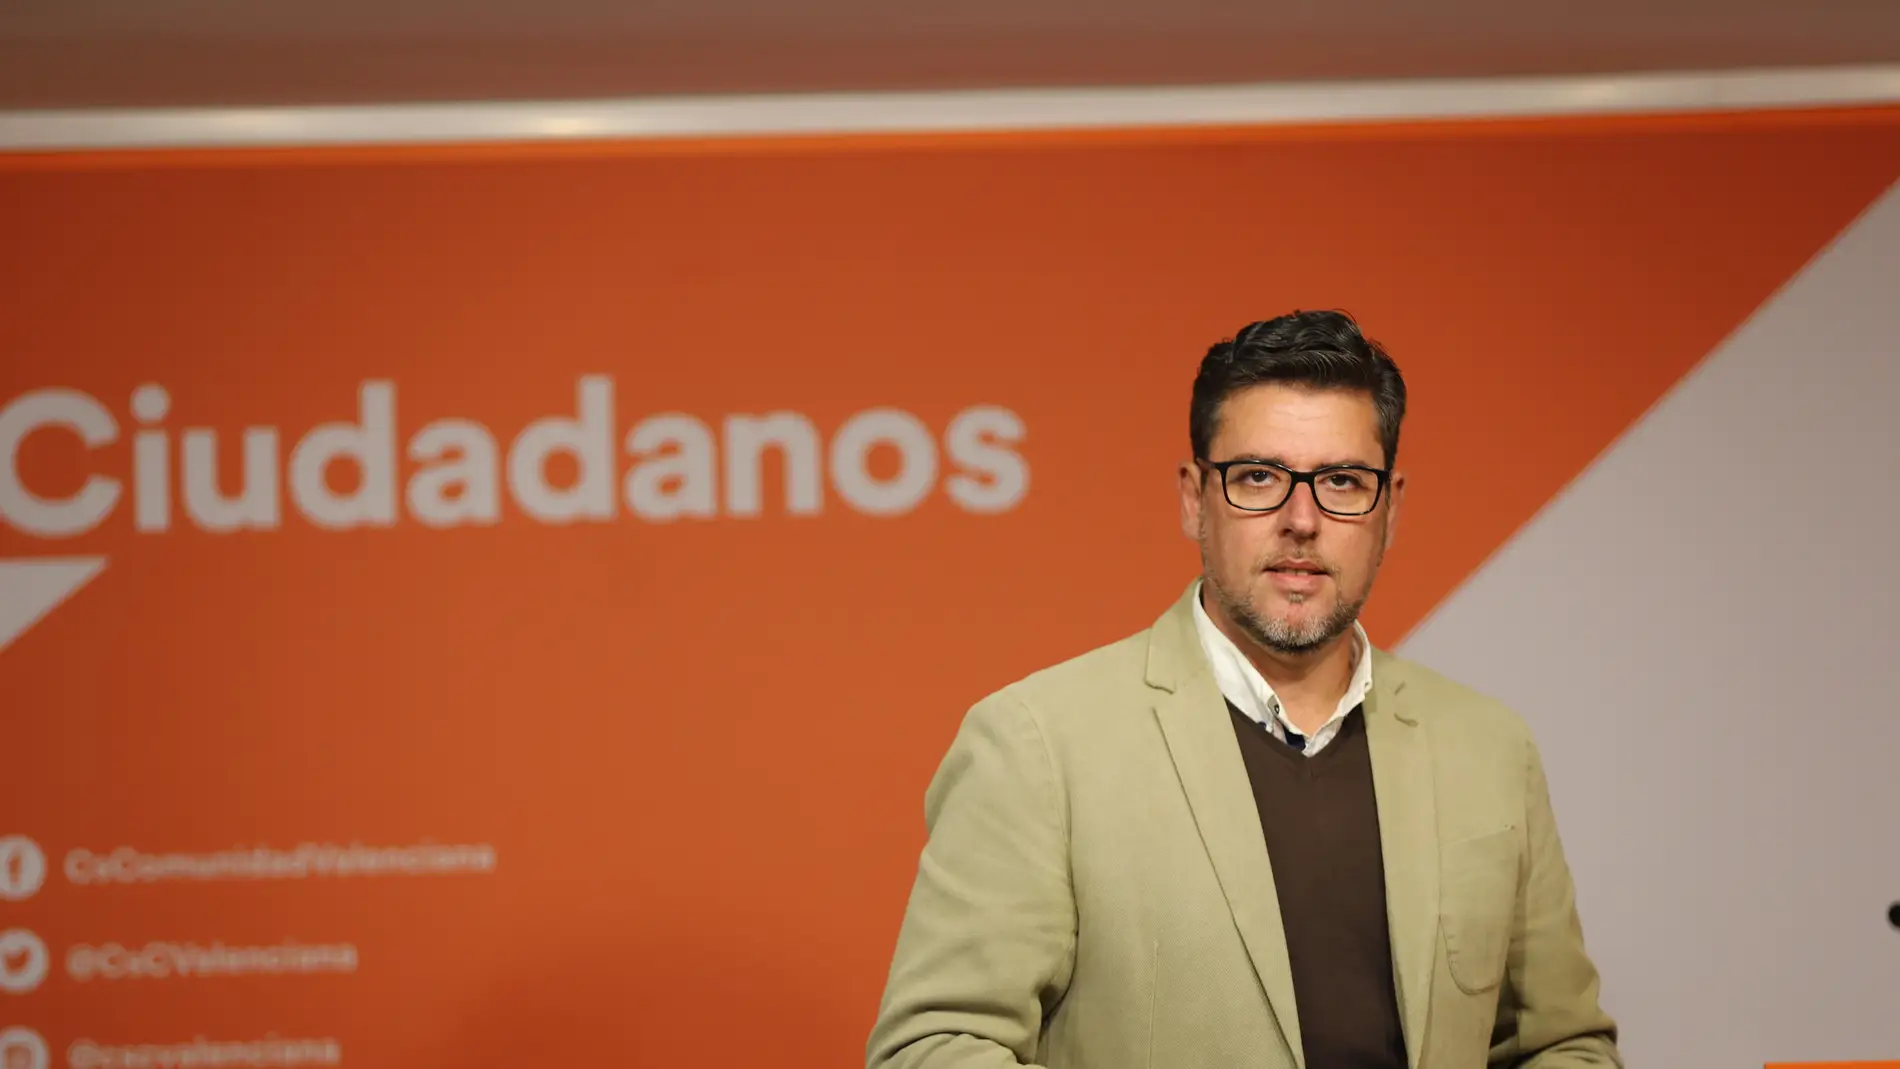 El diputado provincial por Ciudadanos, Javier Gutiérrez